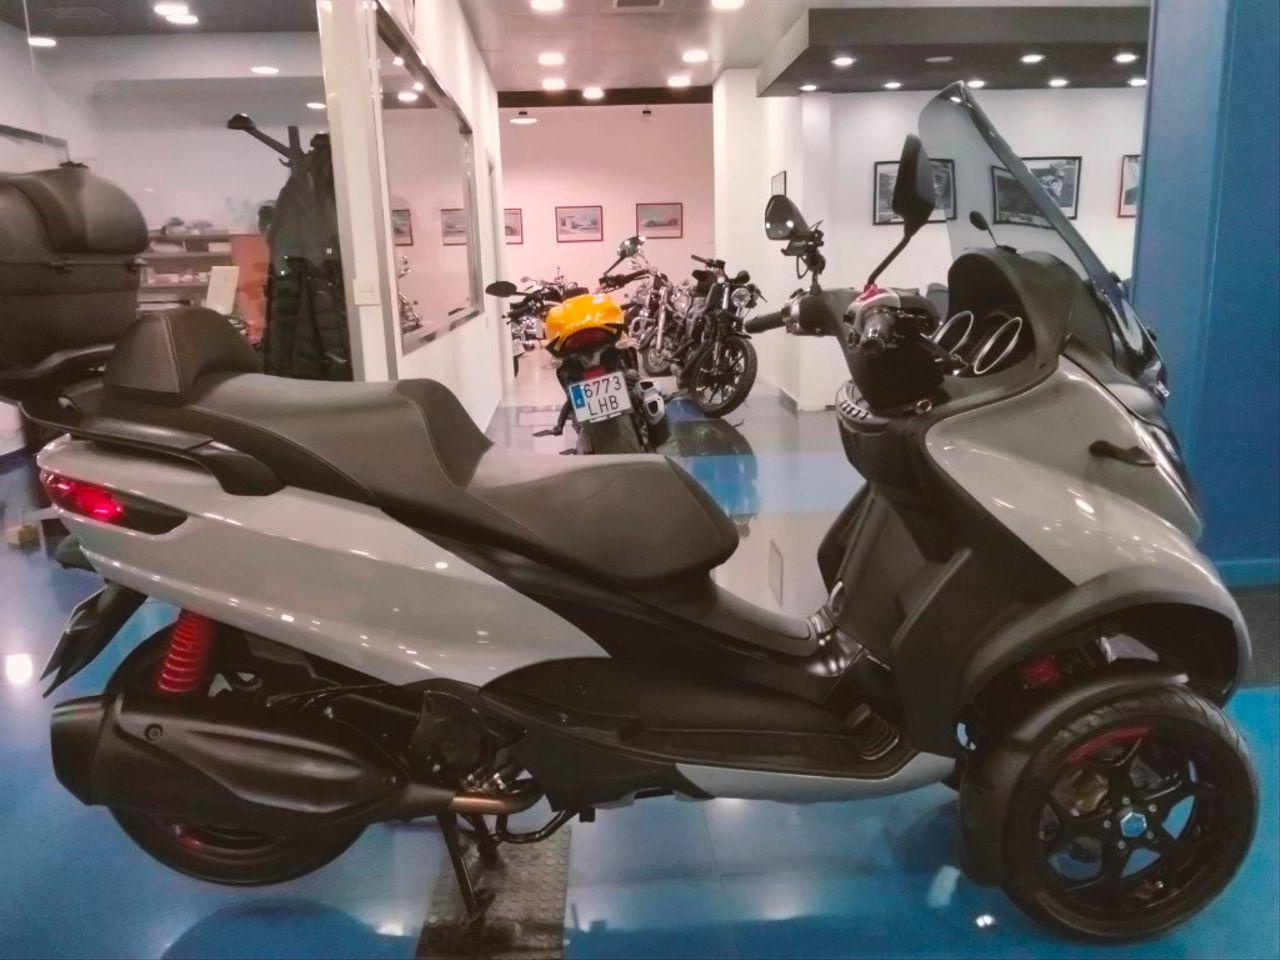 Moto PIAGGIO MP3 350 de seguna mano del año 2020 en Málaga